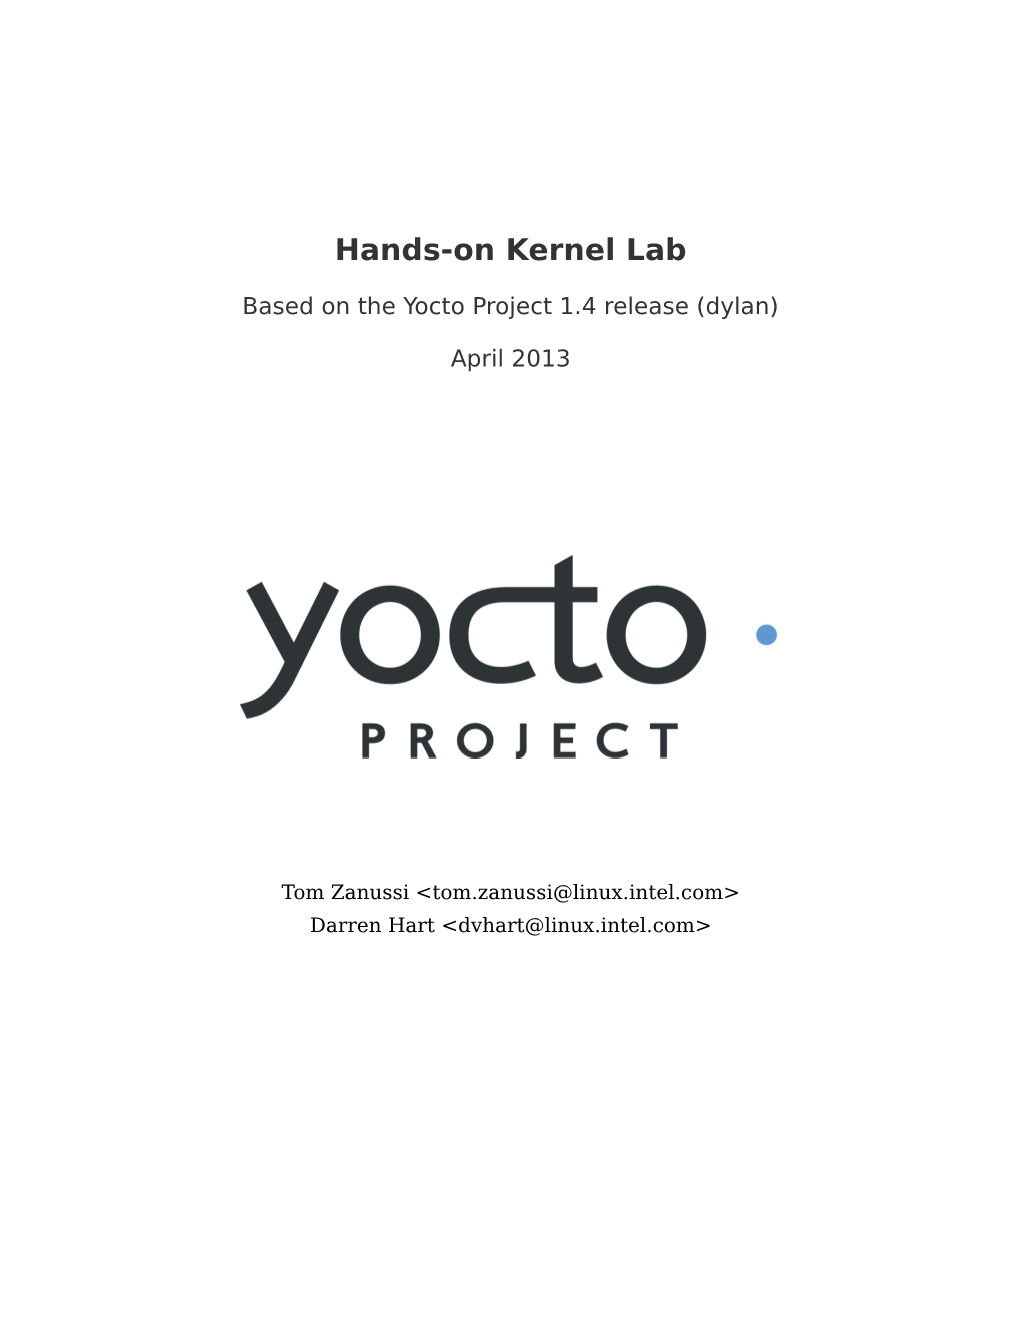 Hands-On Kernel Lab